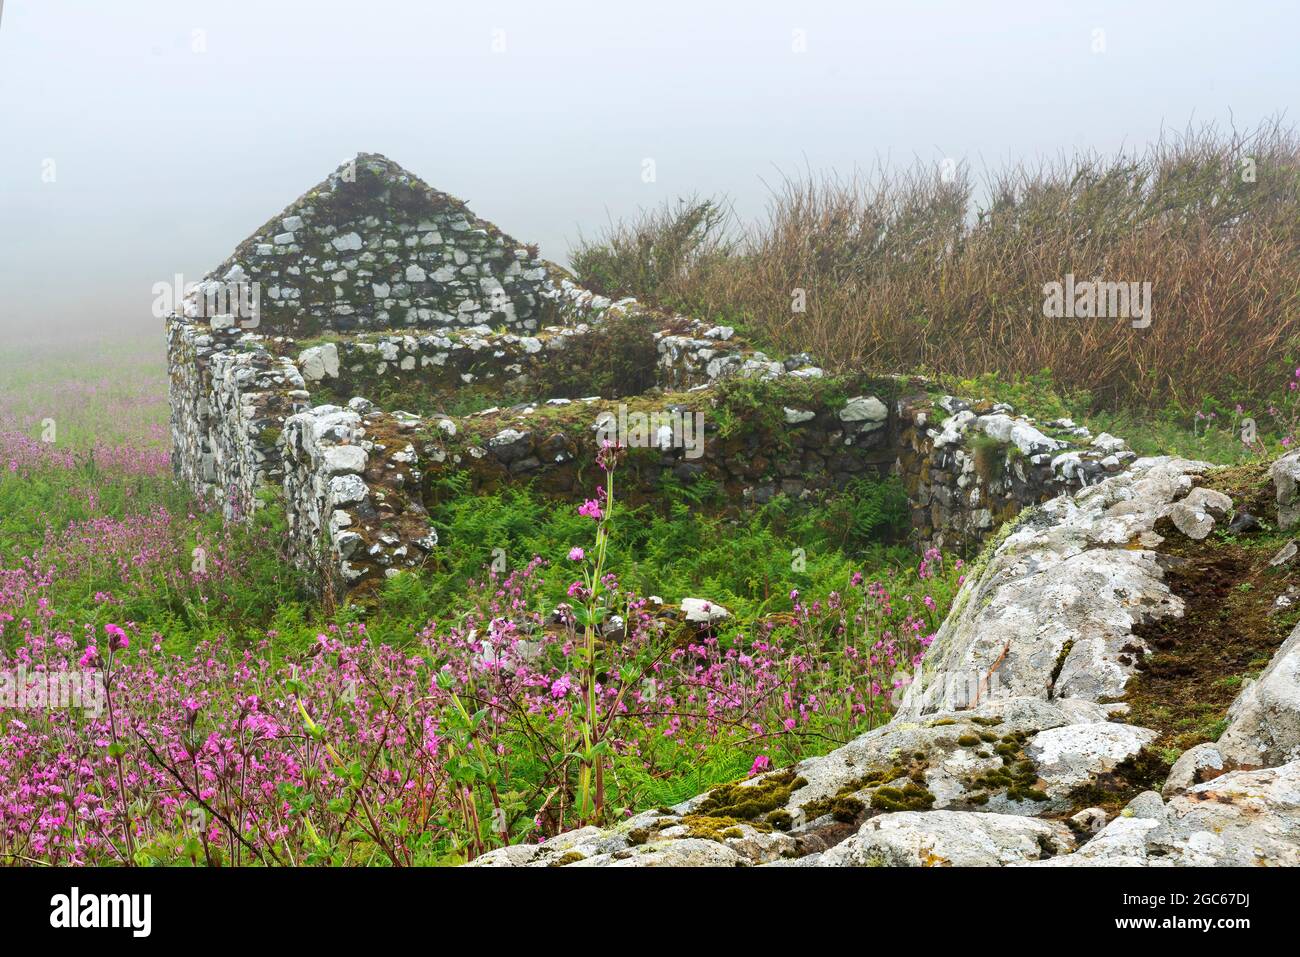 Alte Bauernhoflandschaft auf Skomer Island Pembrokeshire South Wales, Großbritannien, die jetzt eine alte Ruine mit einer Steinmauer ist, die mit Nebel, Stockphot bedeckt ist Stockfoto